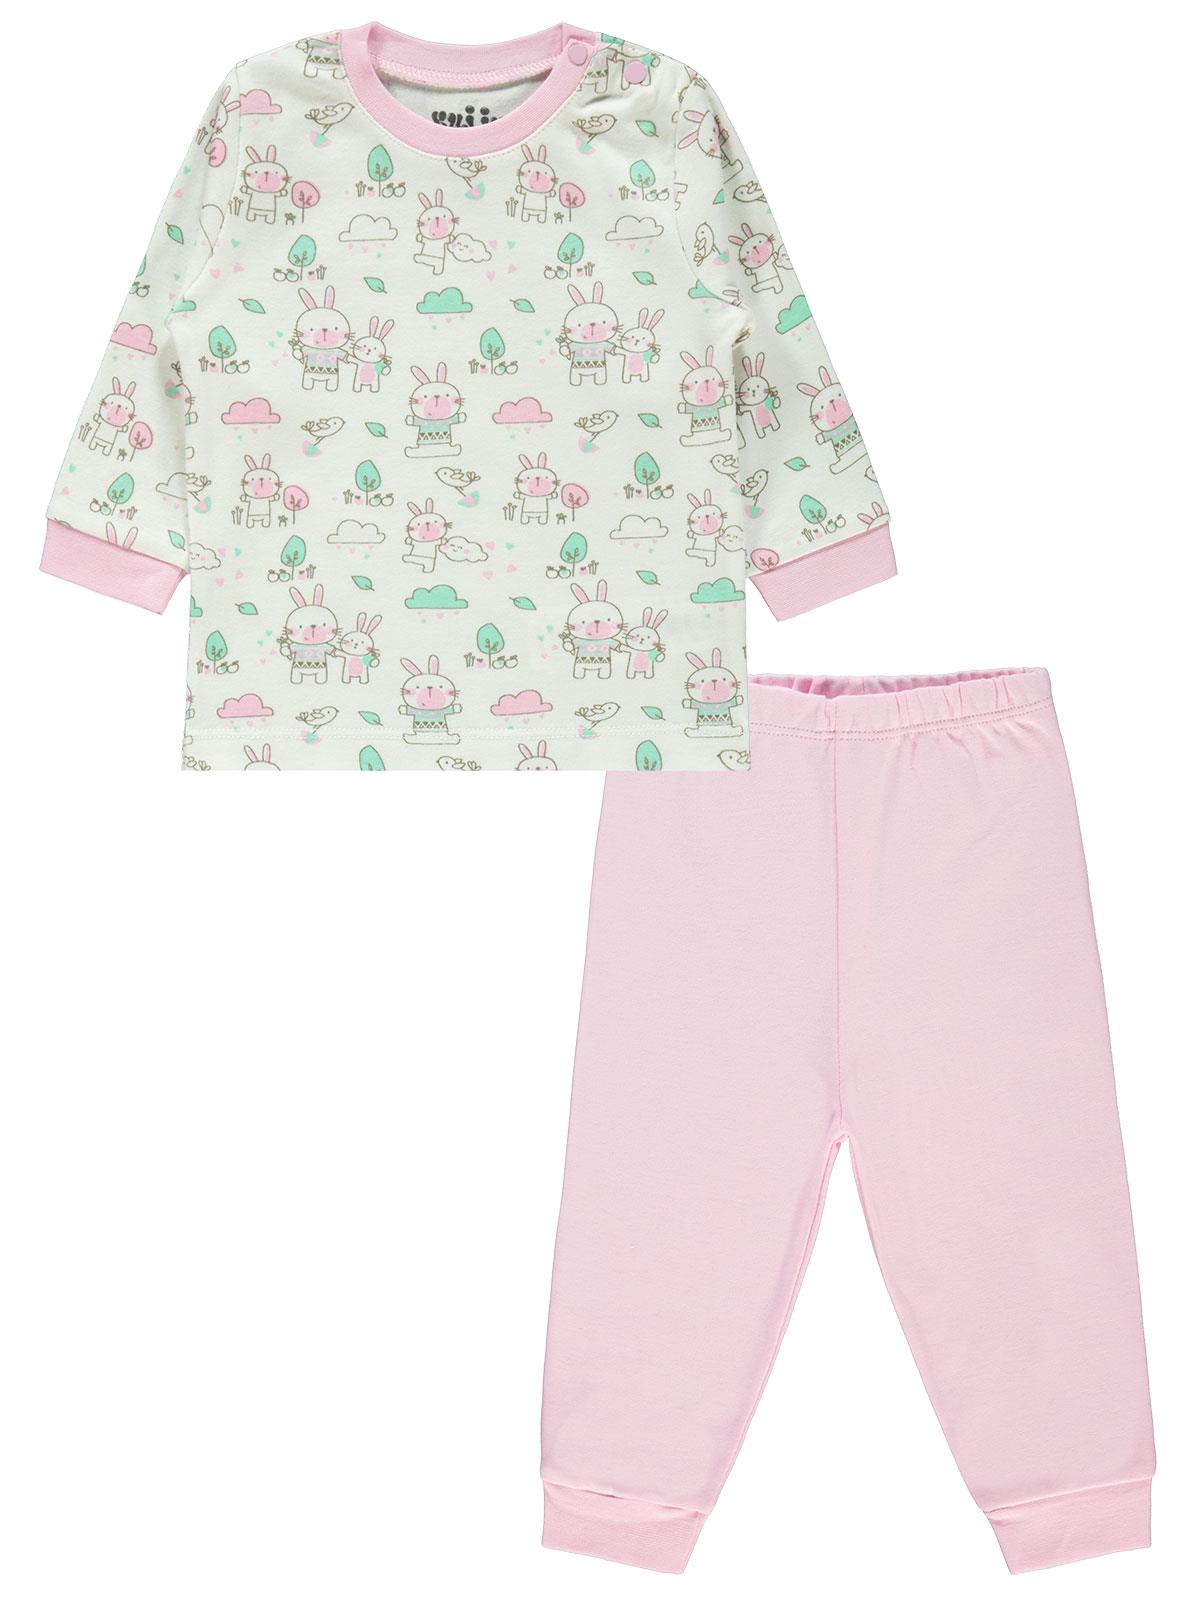 Kujju Kız Bebek Pijama Takımı 6-18 Ay Pembe